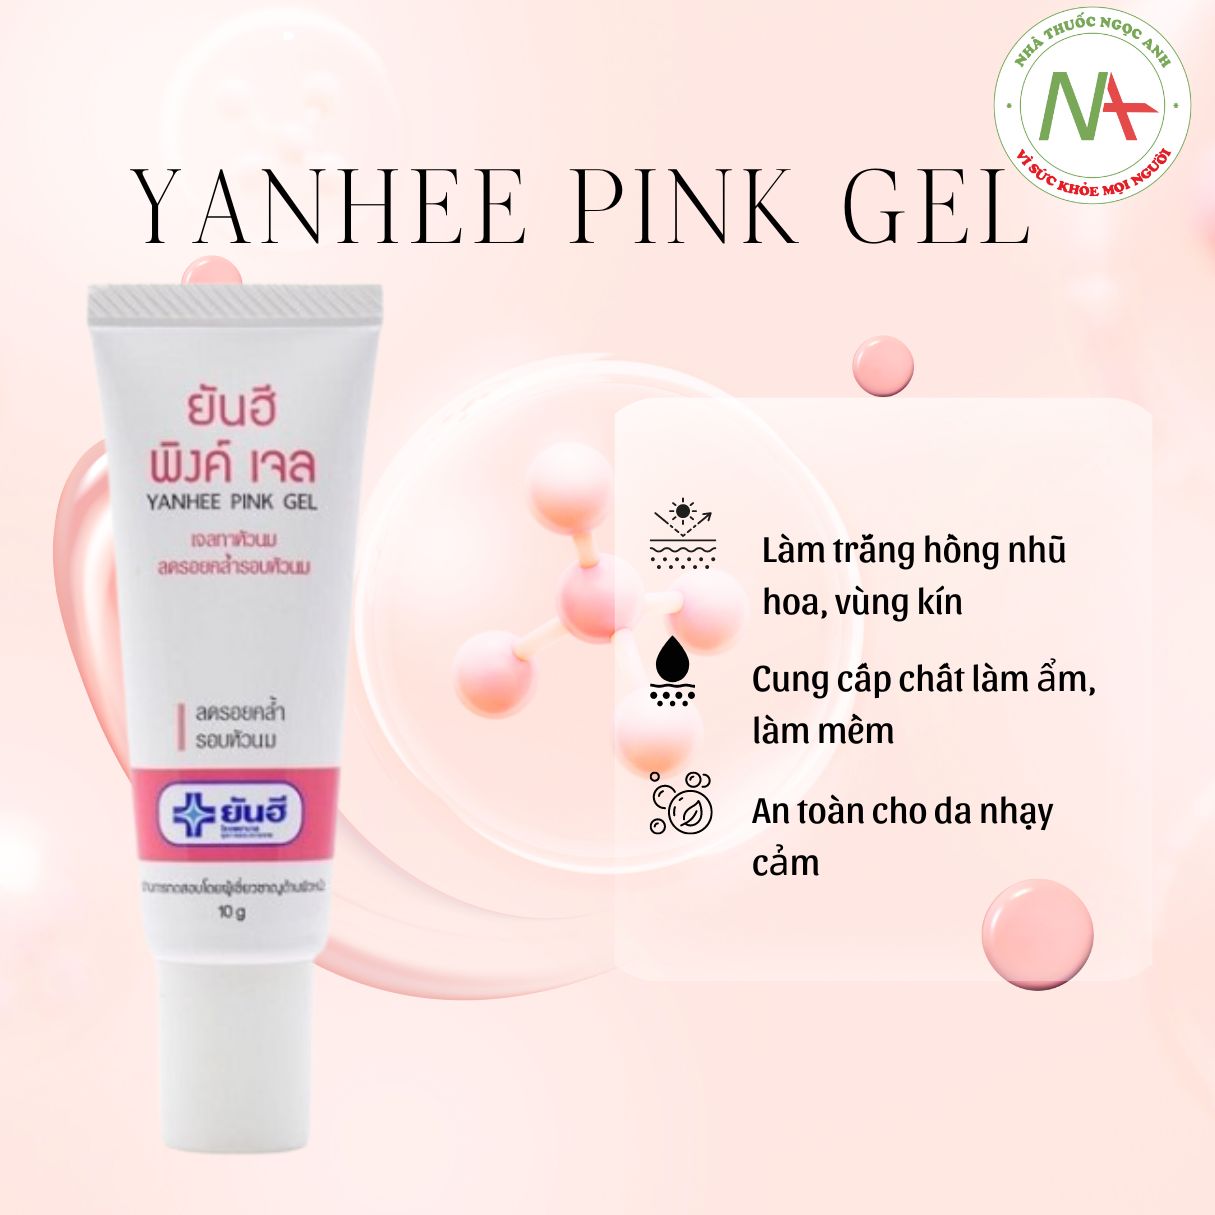 Yanhee Pink Gel